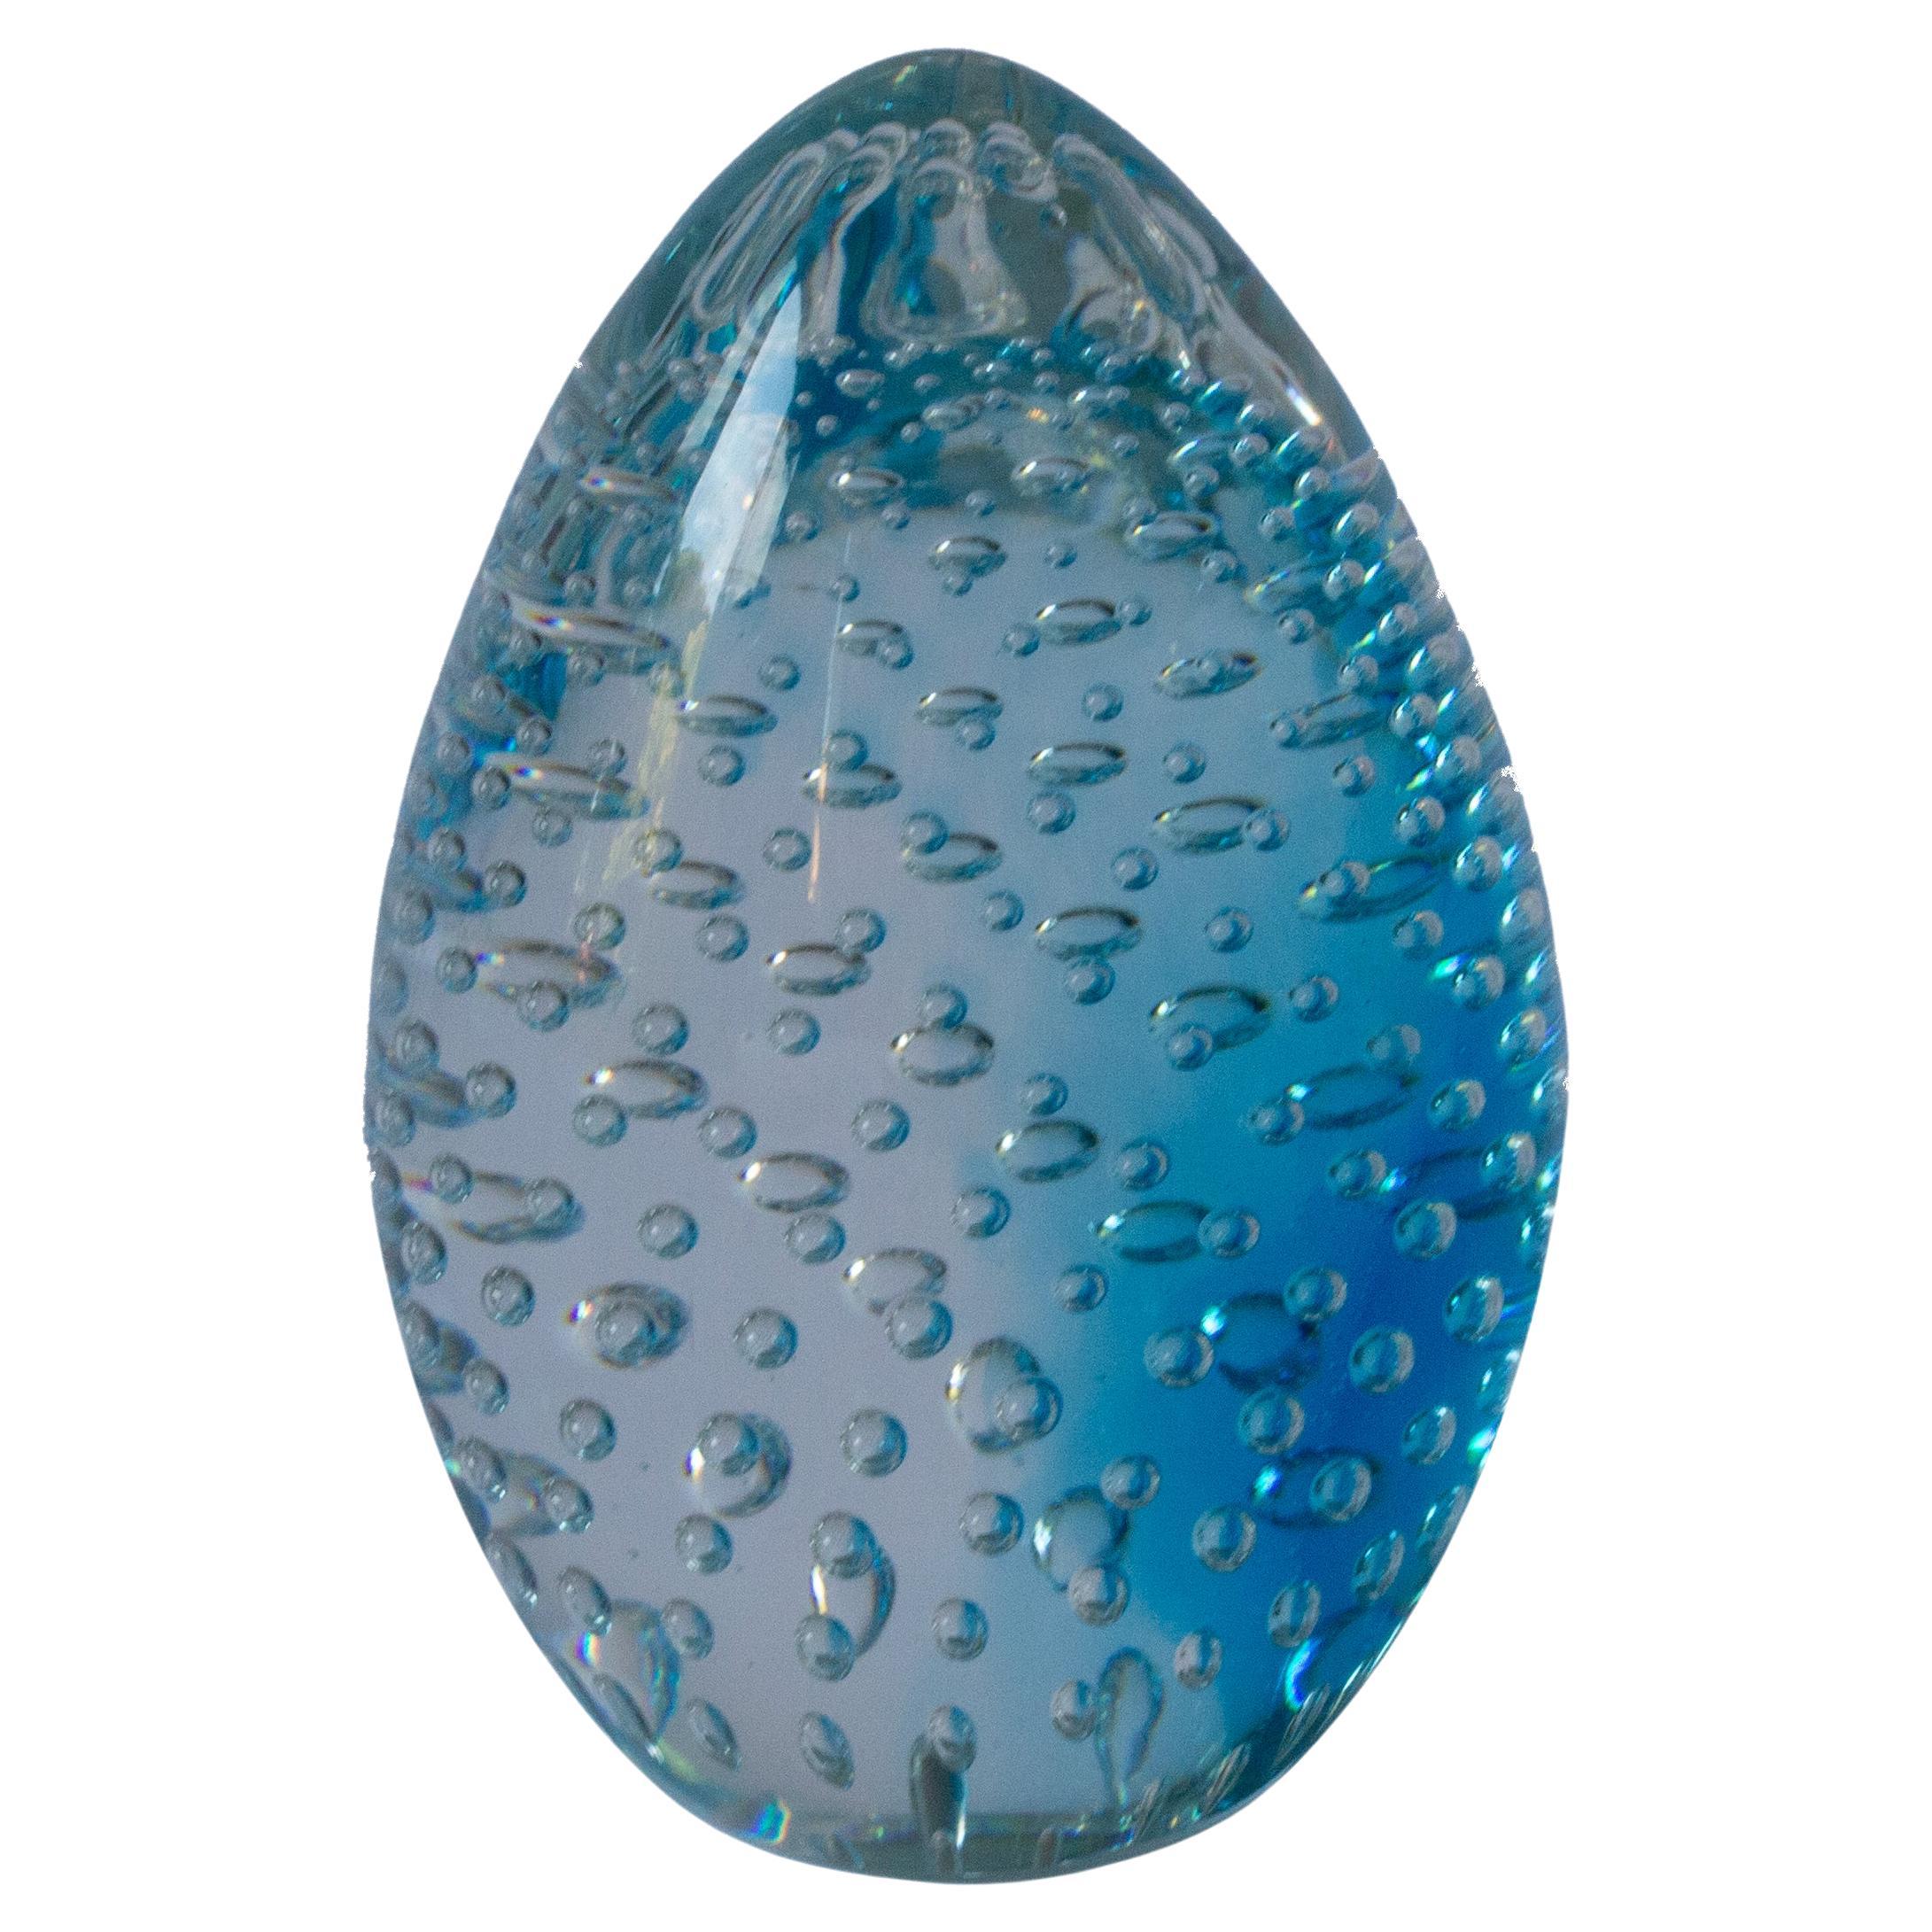 Le verre Seguso Blue Letterpress d'Archemide, fabriqué à Murano, présente d'étonnantes bulles d'air en forme de spirale. L'artiste verrier de renom Archimede Seguso présente ses techniques innovantes et sa vision artistique dans cette création, qui